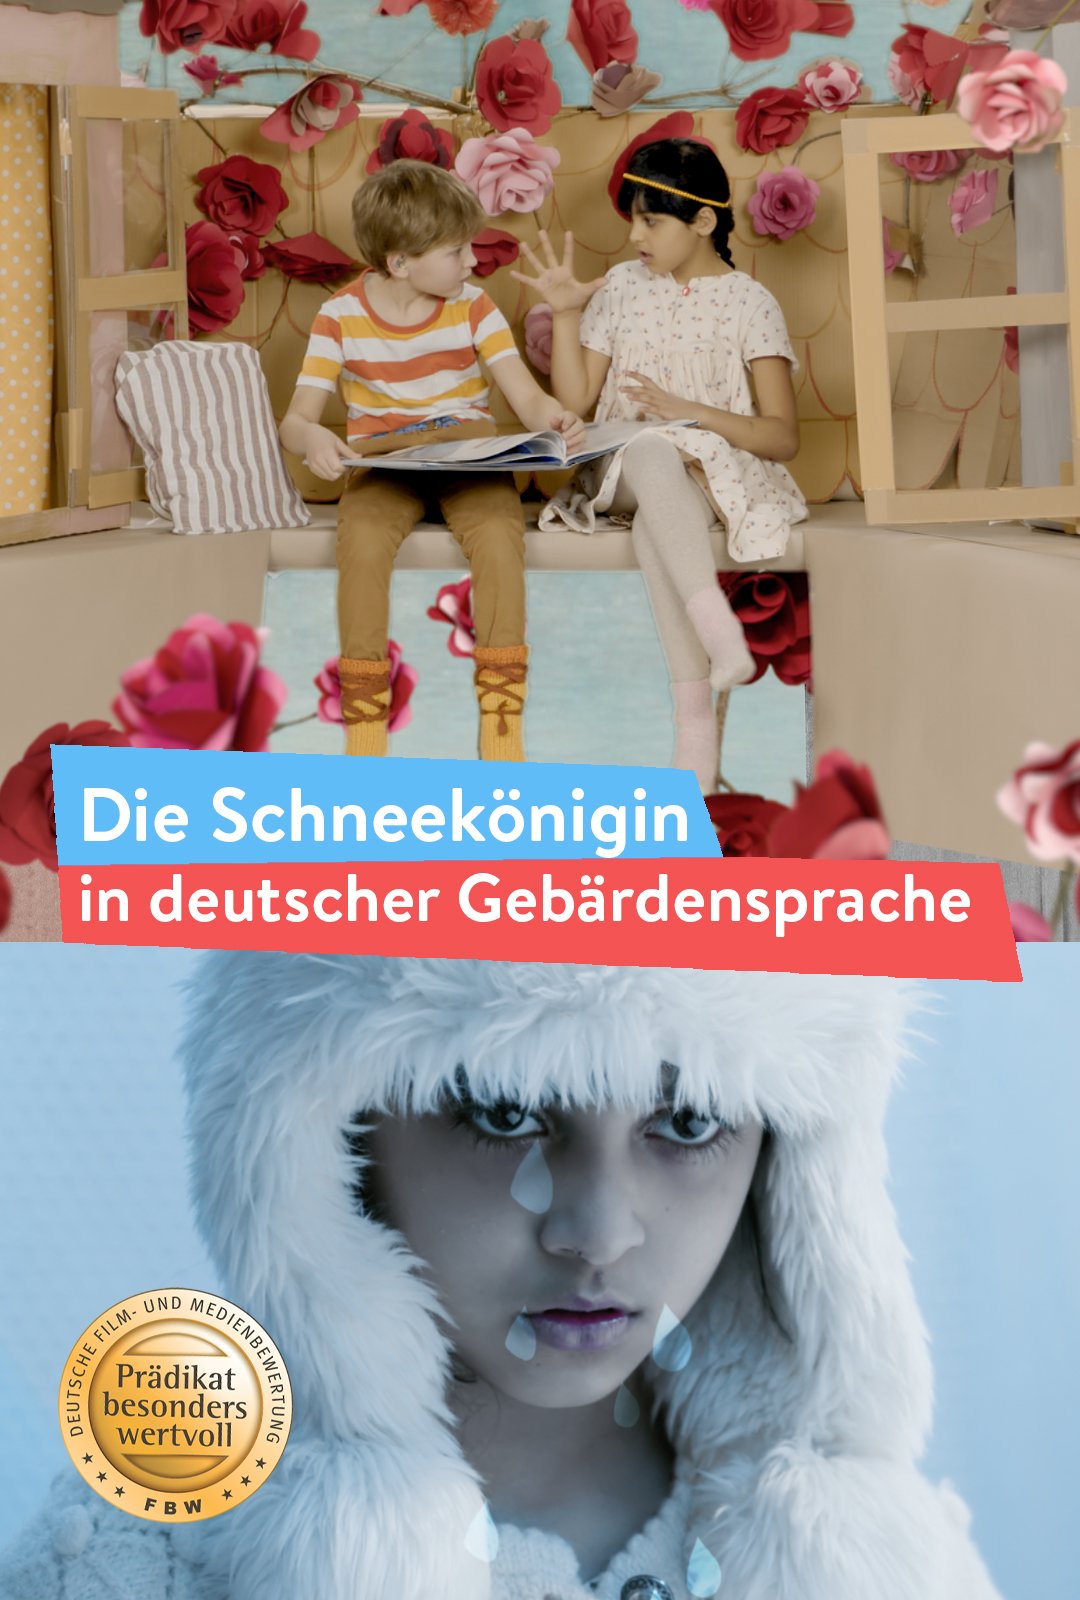 DVD-Schneekönigin-Poster.jpg